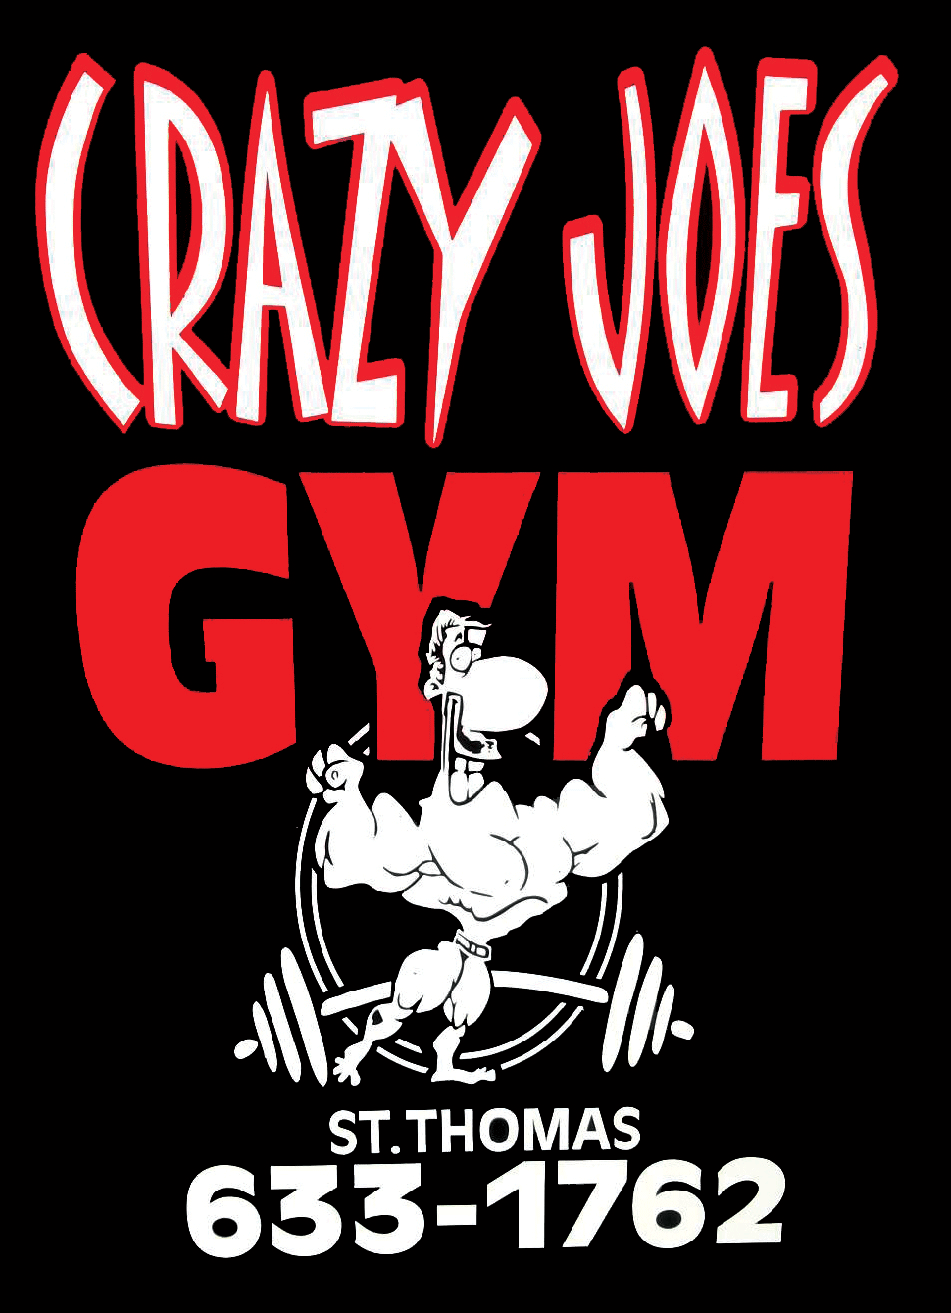 Crazy Joes Gym